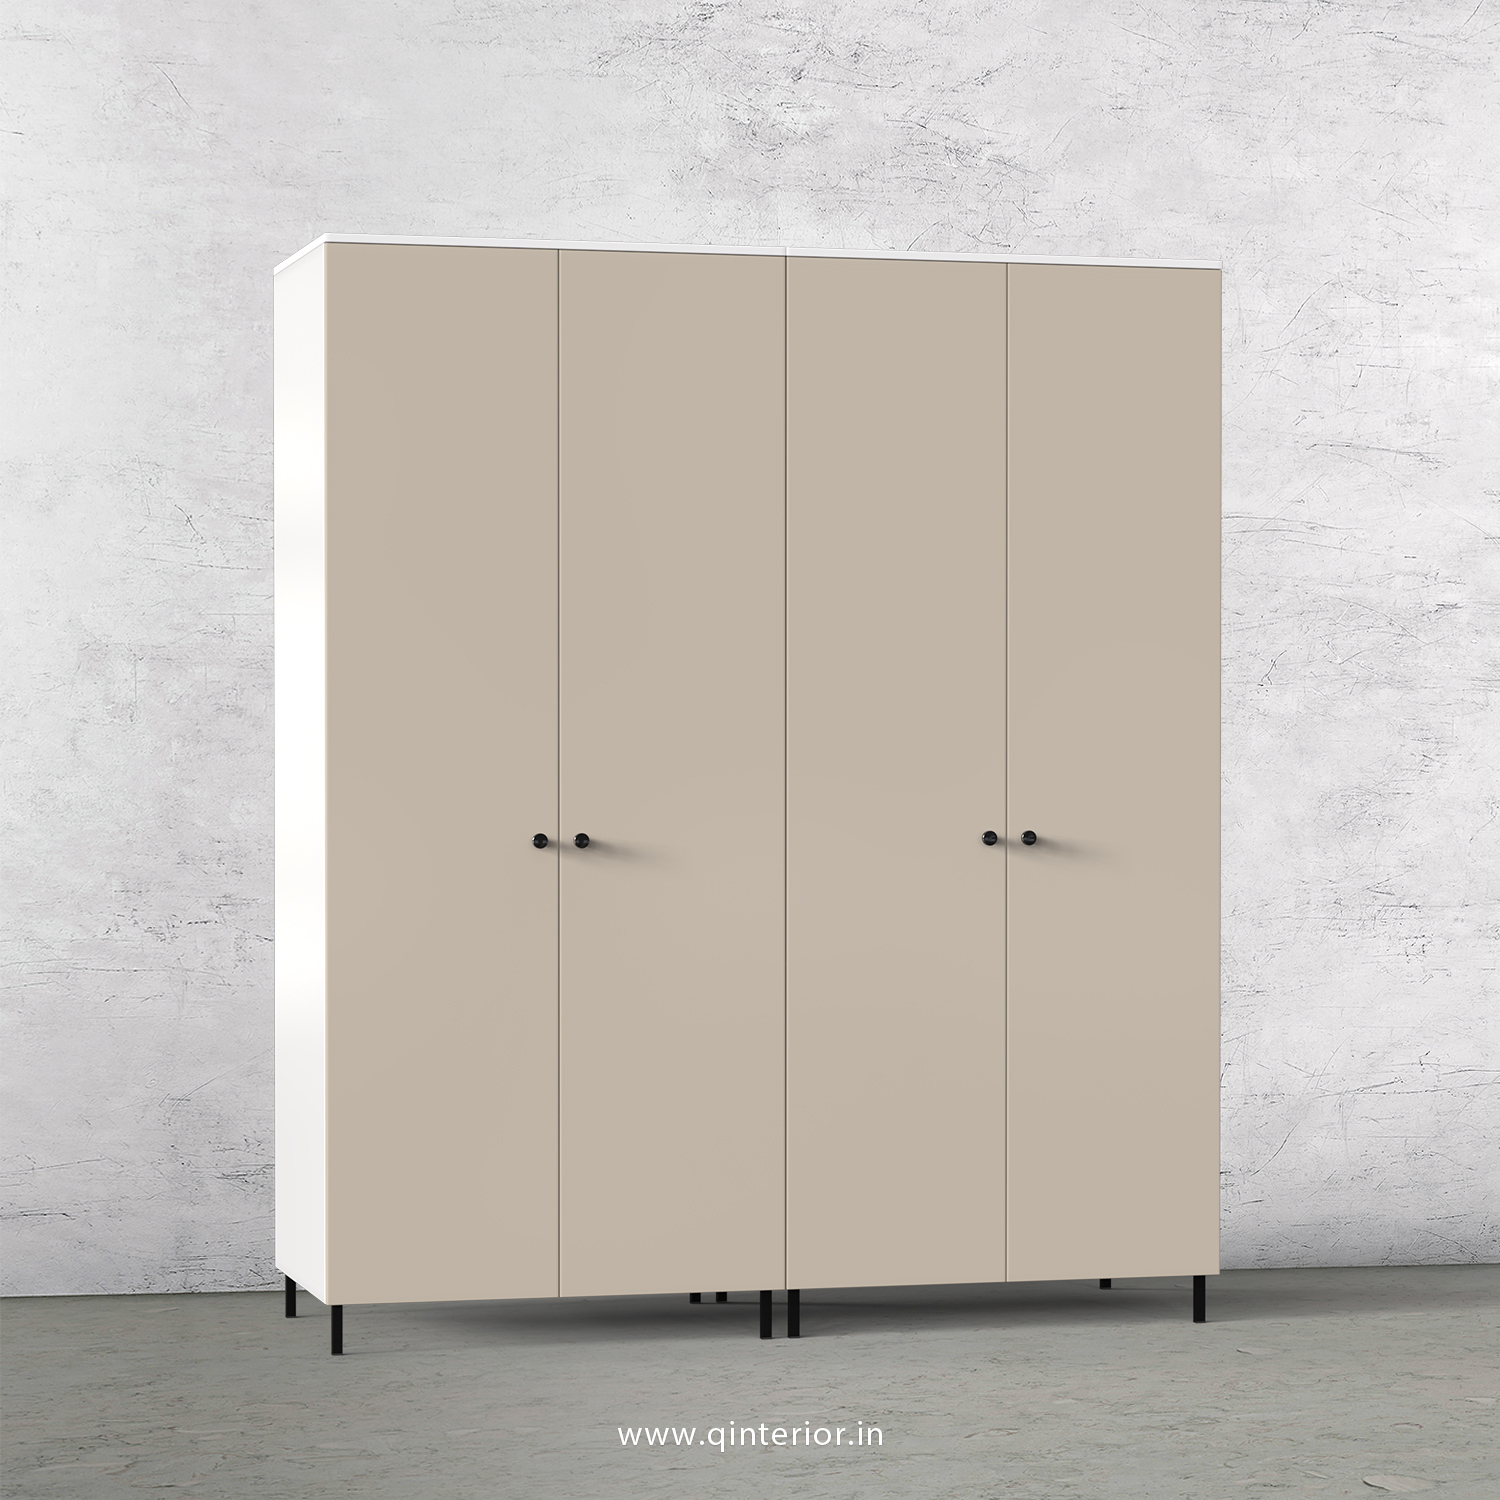 Lambent 4 Door Wardrobe in White and Irish Cream Finish – FWRD001 C88